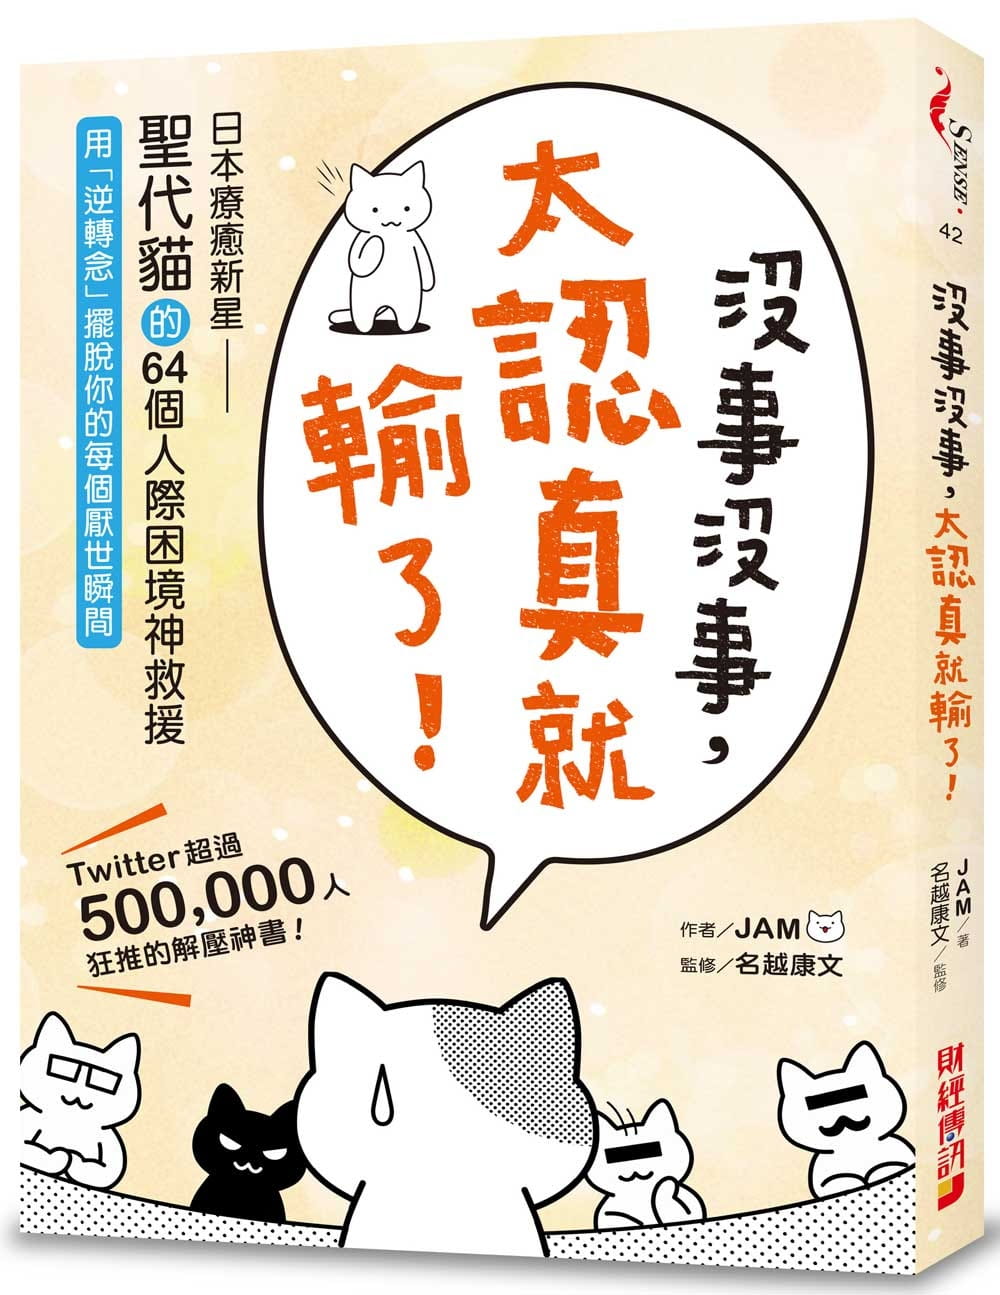 沒事沒事，太認真就輸了：日本療癒新星「聖代貓」的64個人際困境神救援，用「逆轉念」擺脫你的每個厭世瞬間